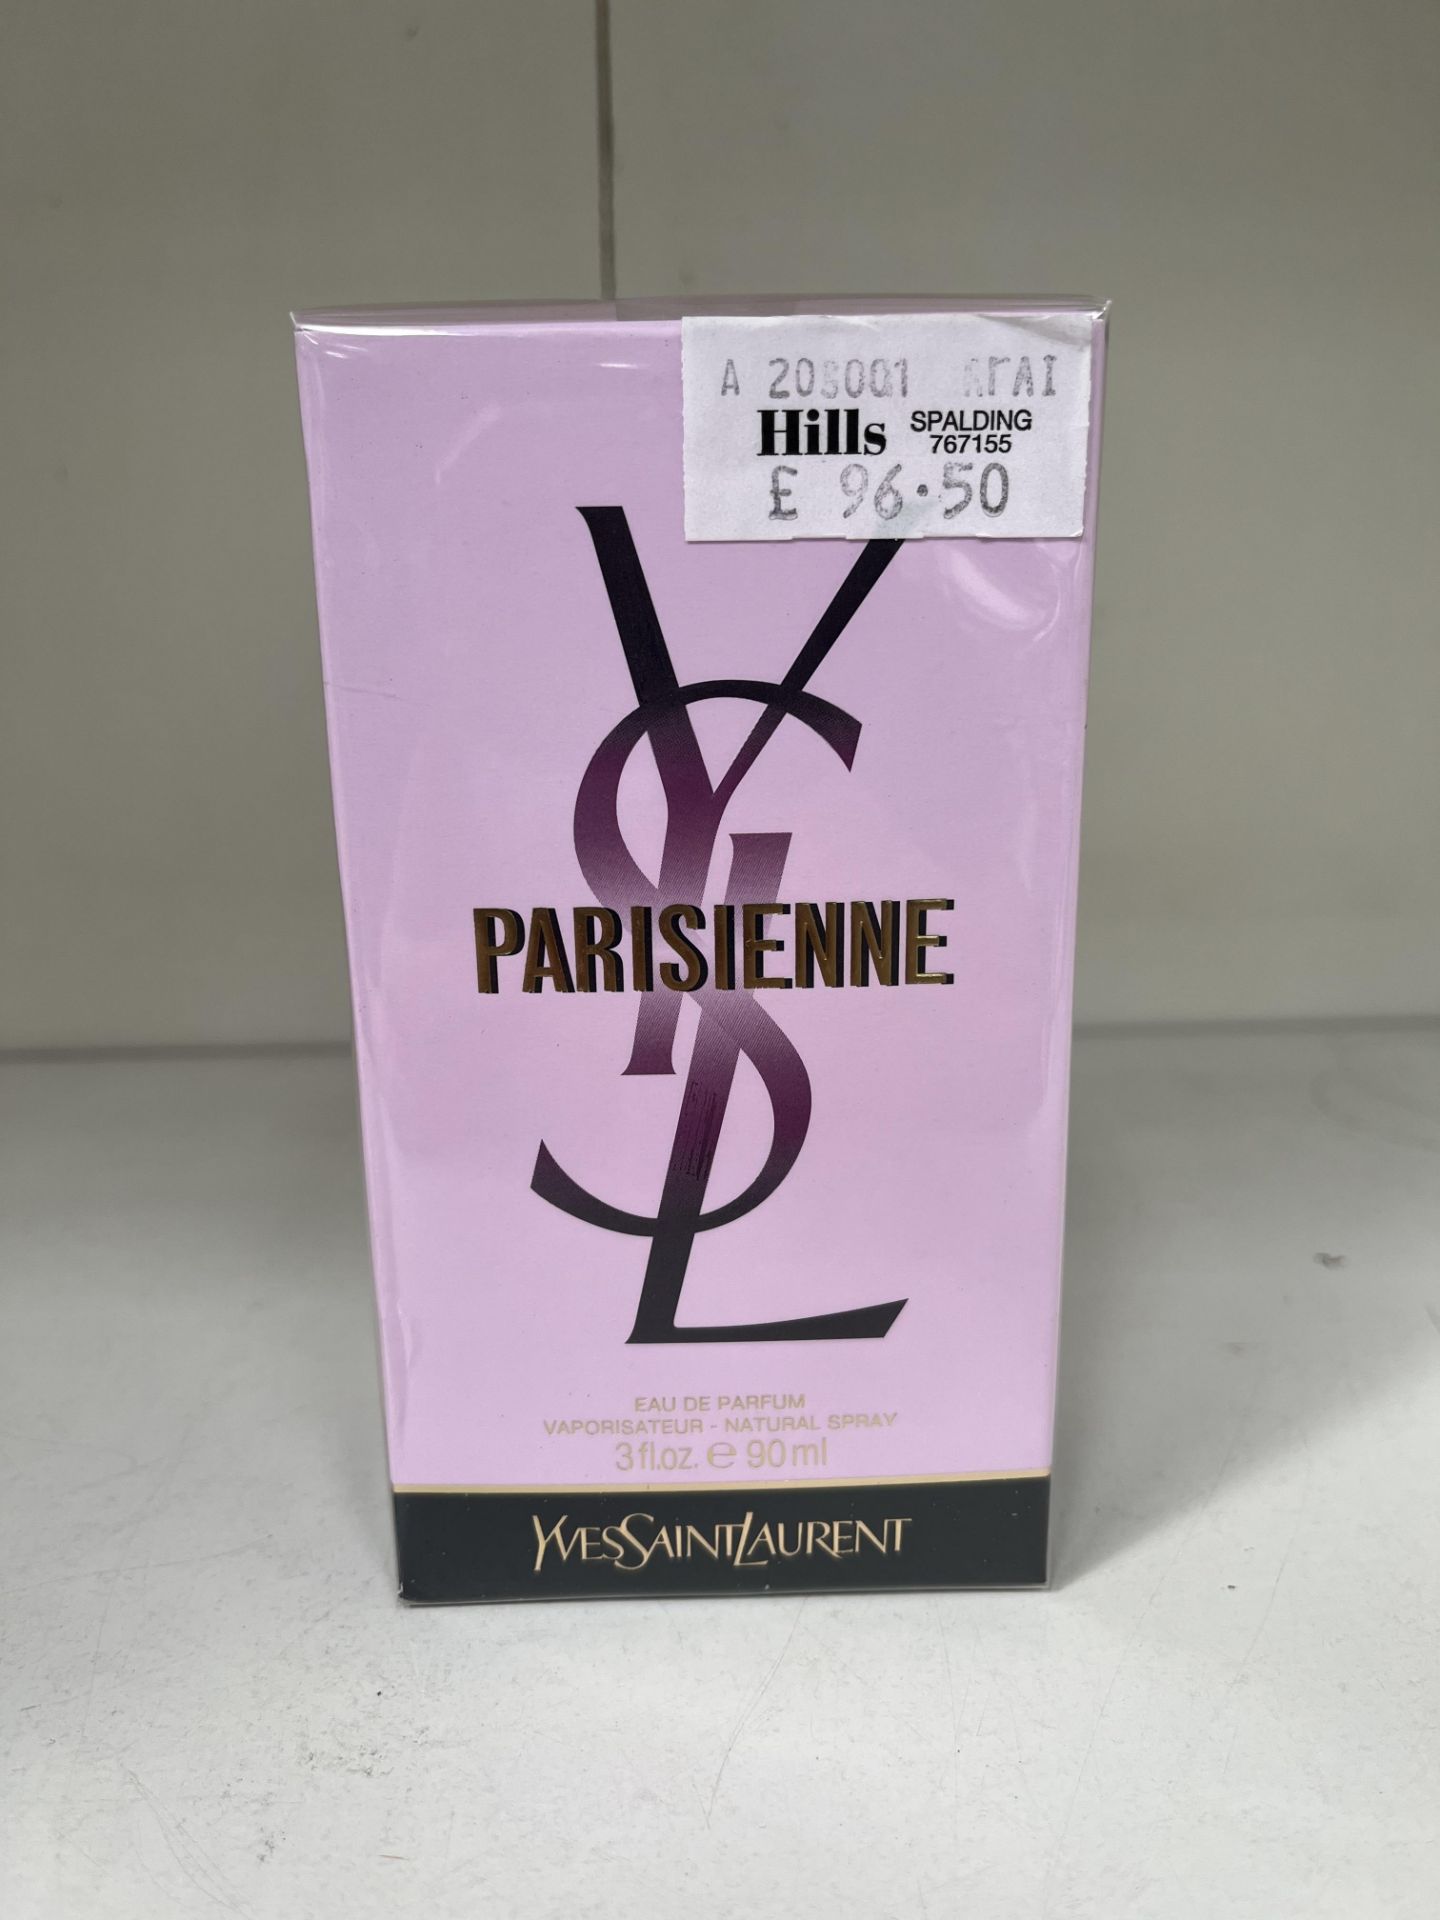 1x 90ml Yves Saint Laurent Parisienne